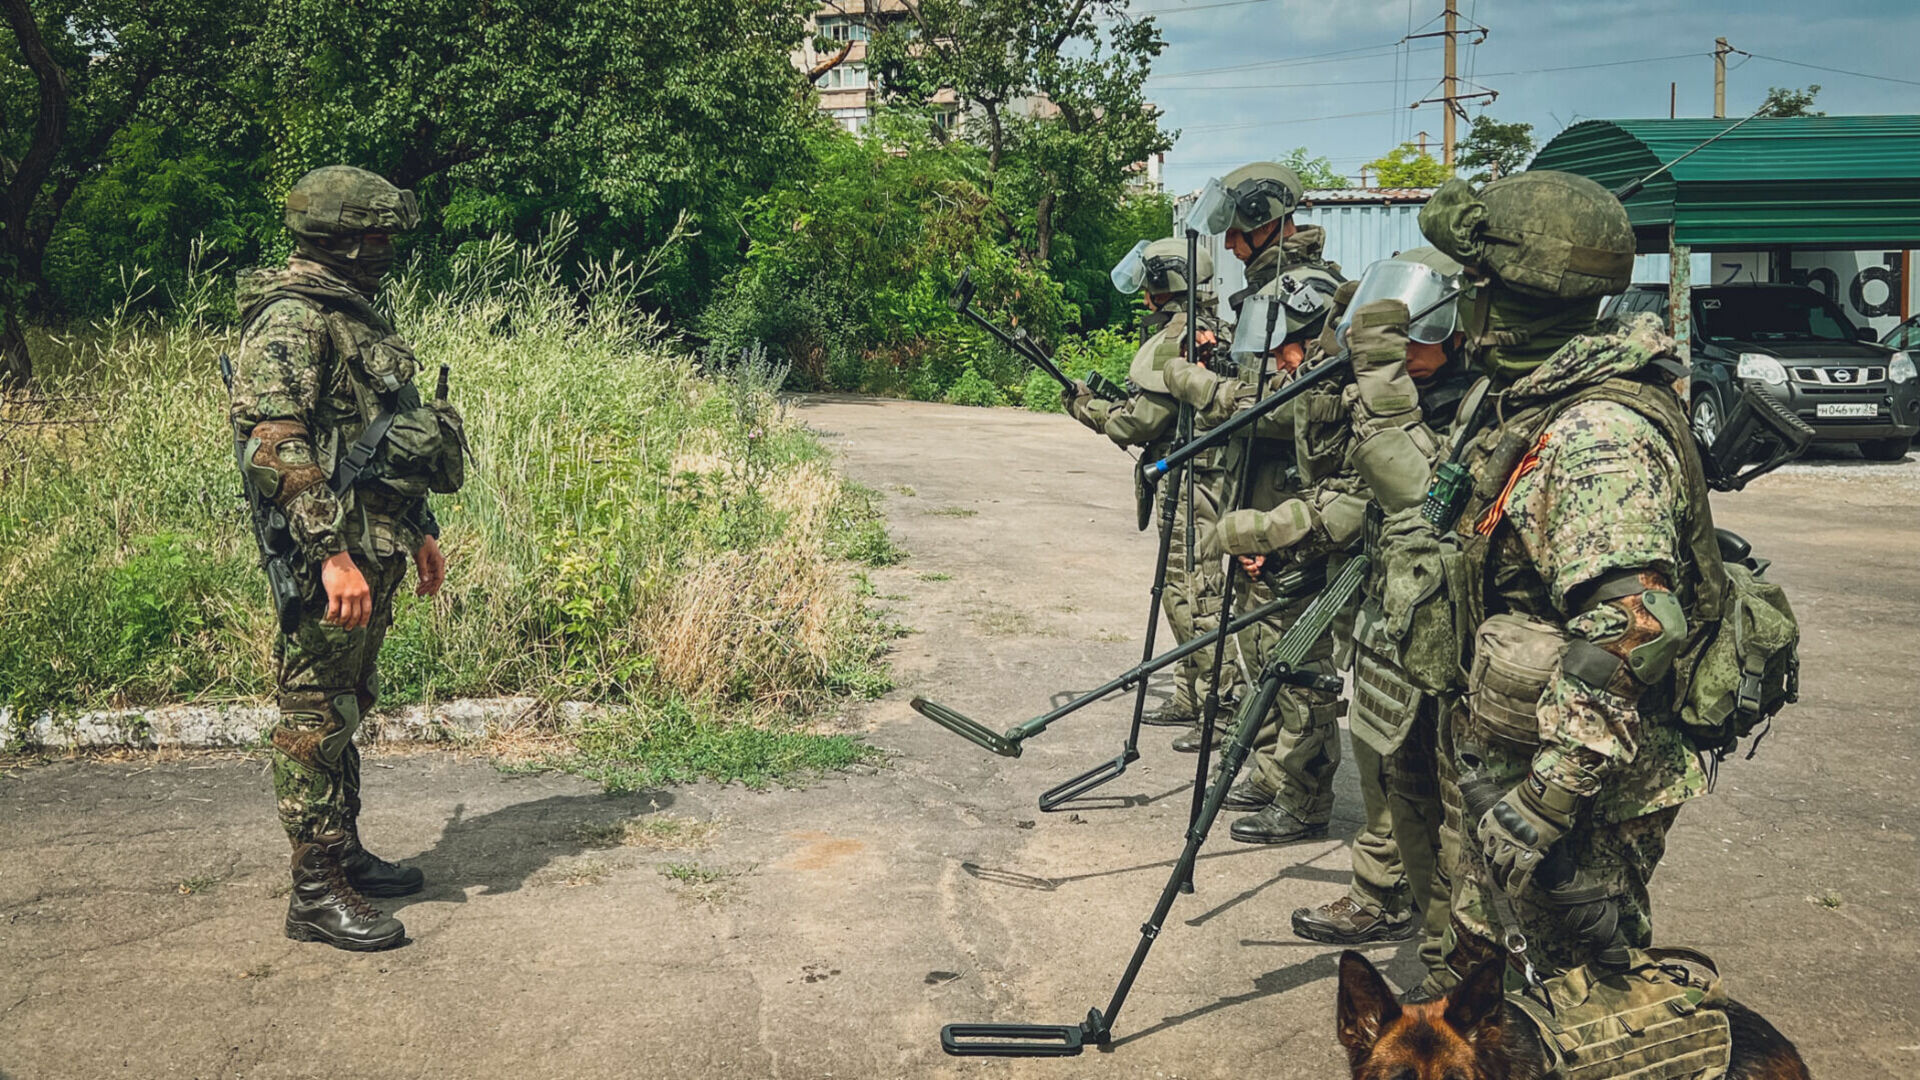 Во Владивосток пришла разнарядка о наборе военнослужащих по контракту